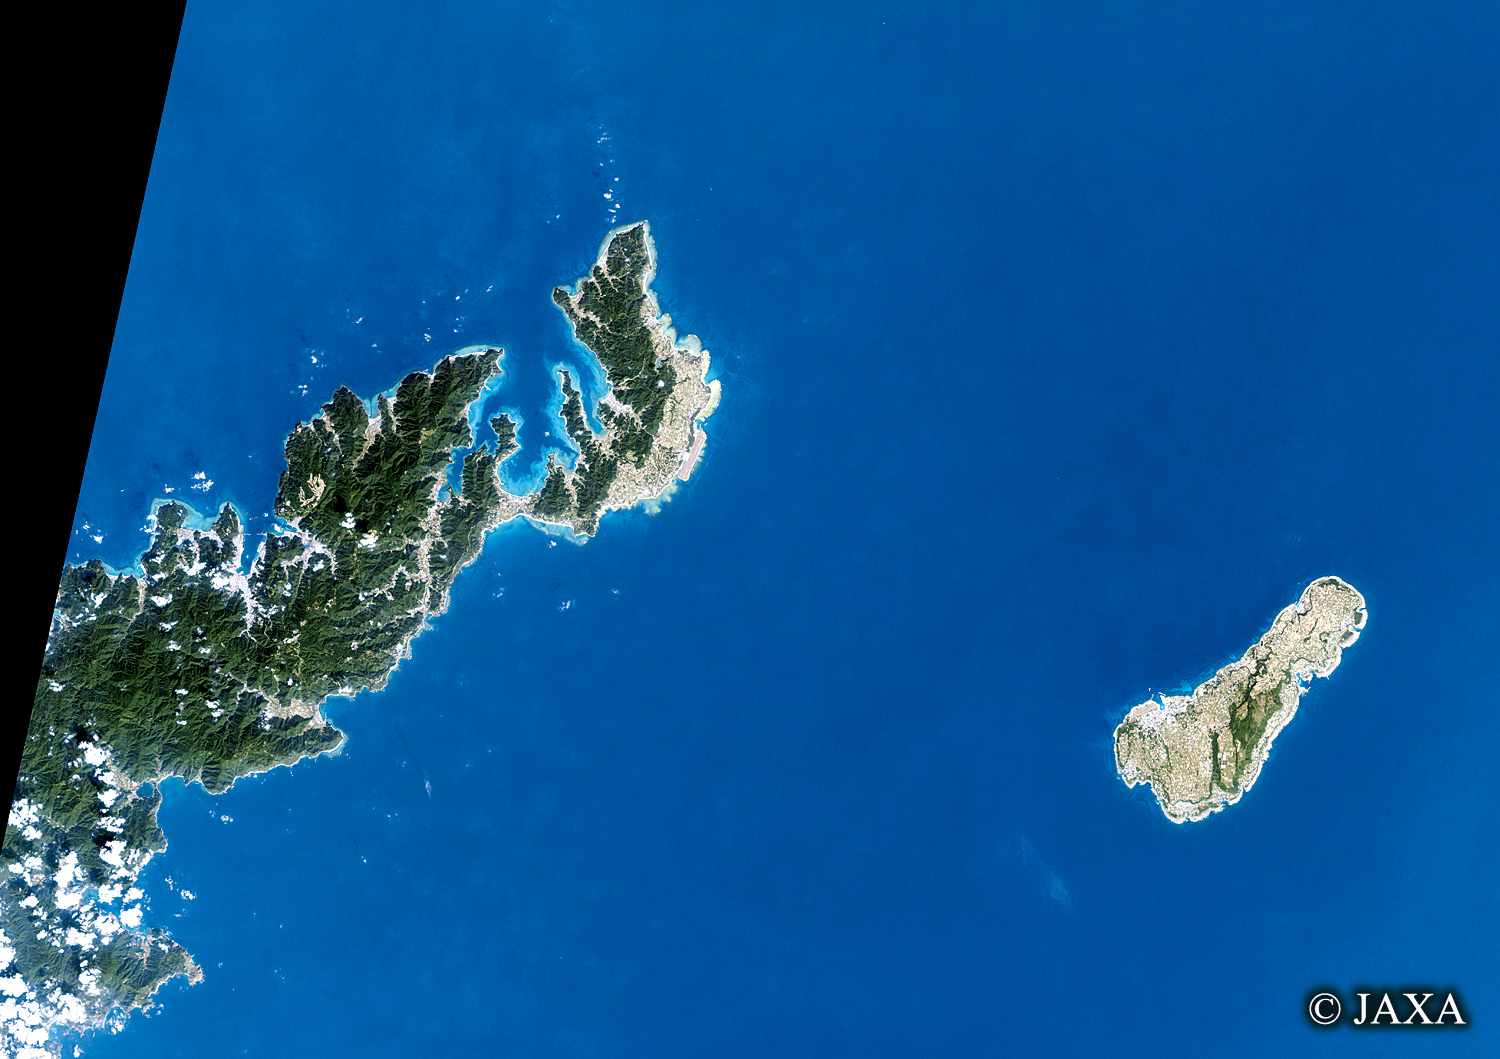 だいちから見た日本の都市 奄美大島・喜界島:衛星画像